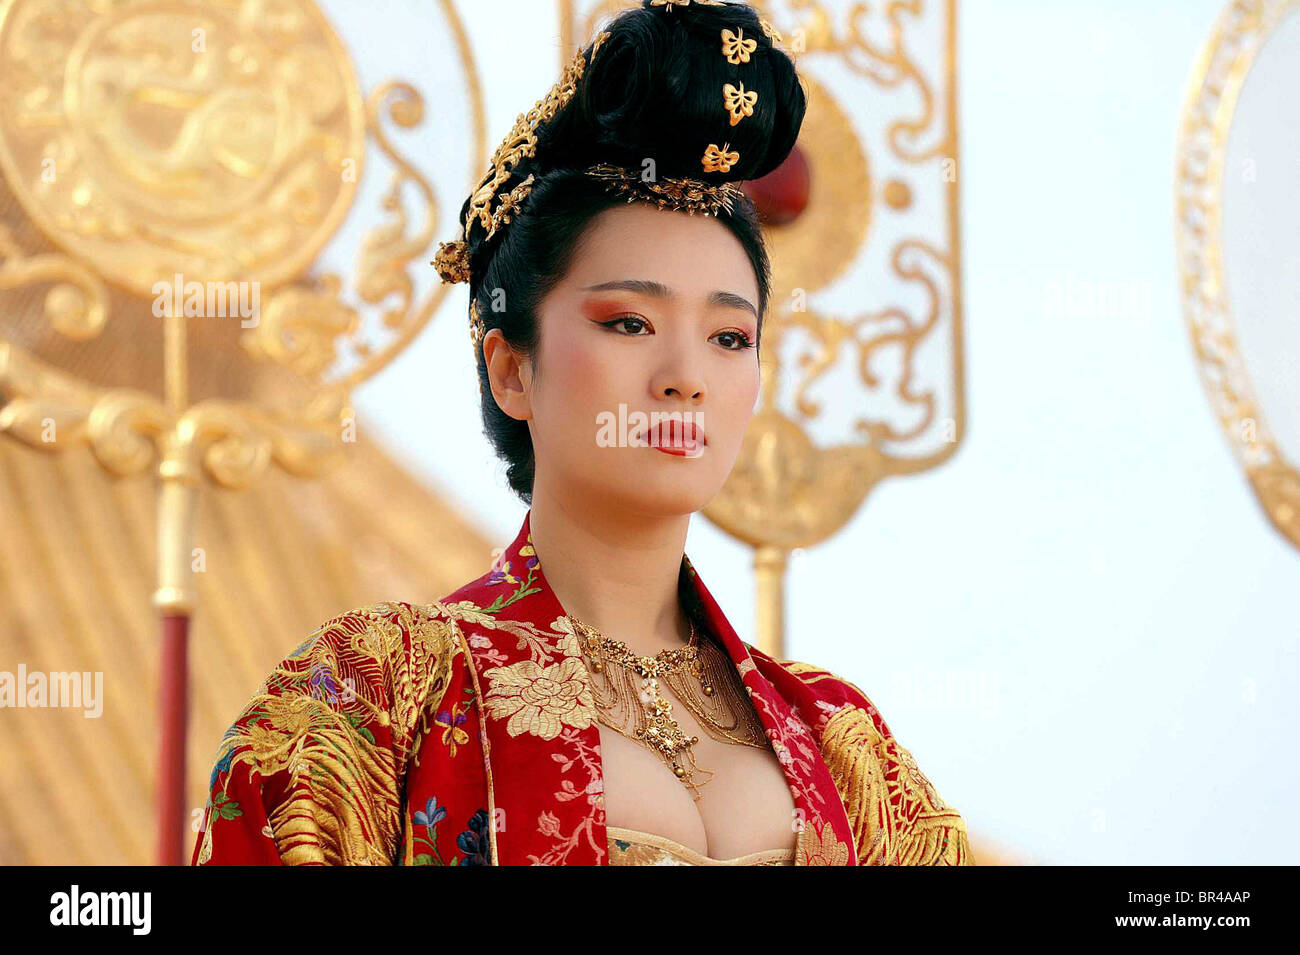 gong-li-curse-of-the-golden-flower-man-cheng-jin-dai-huang-jin-jia-BR4AAP.jpg